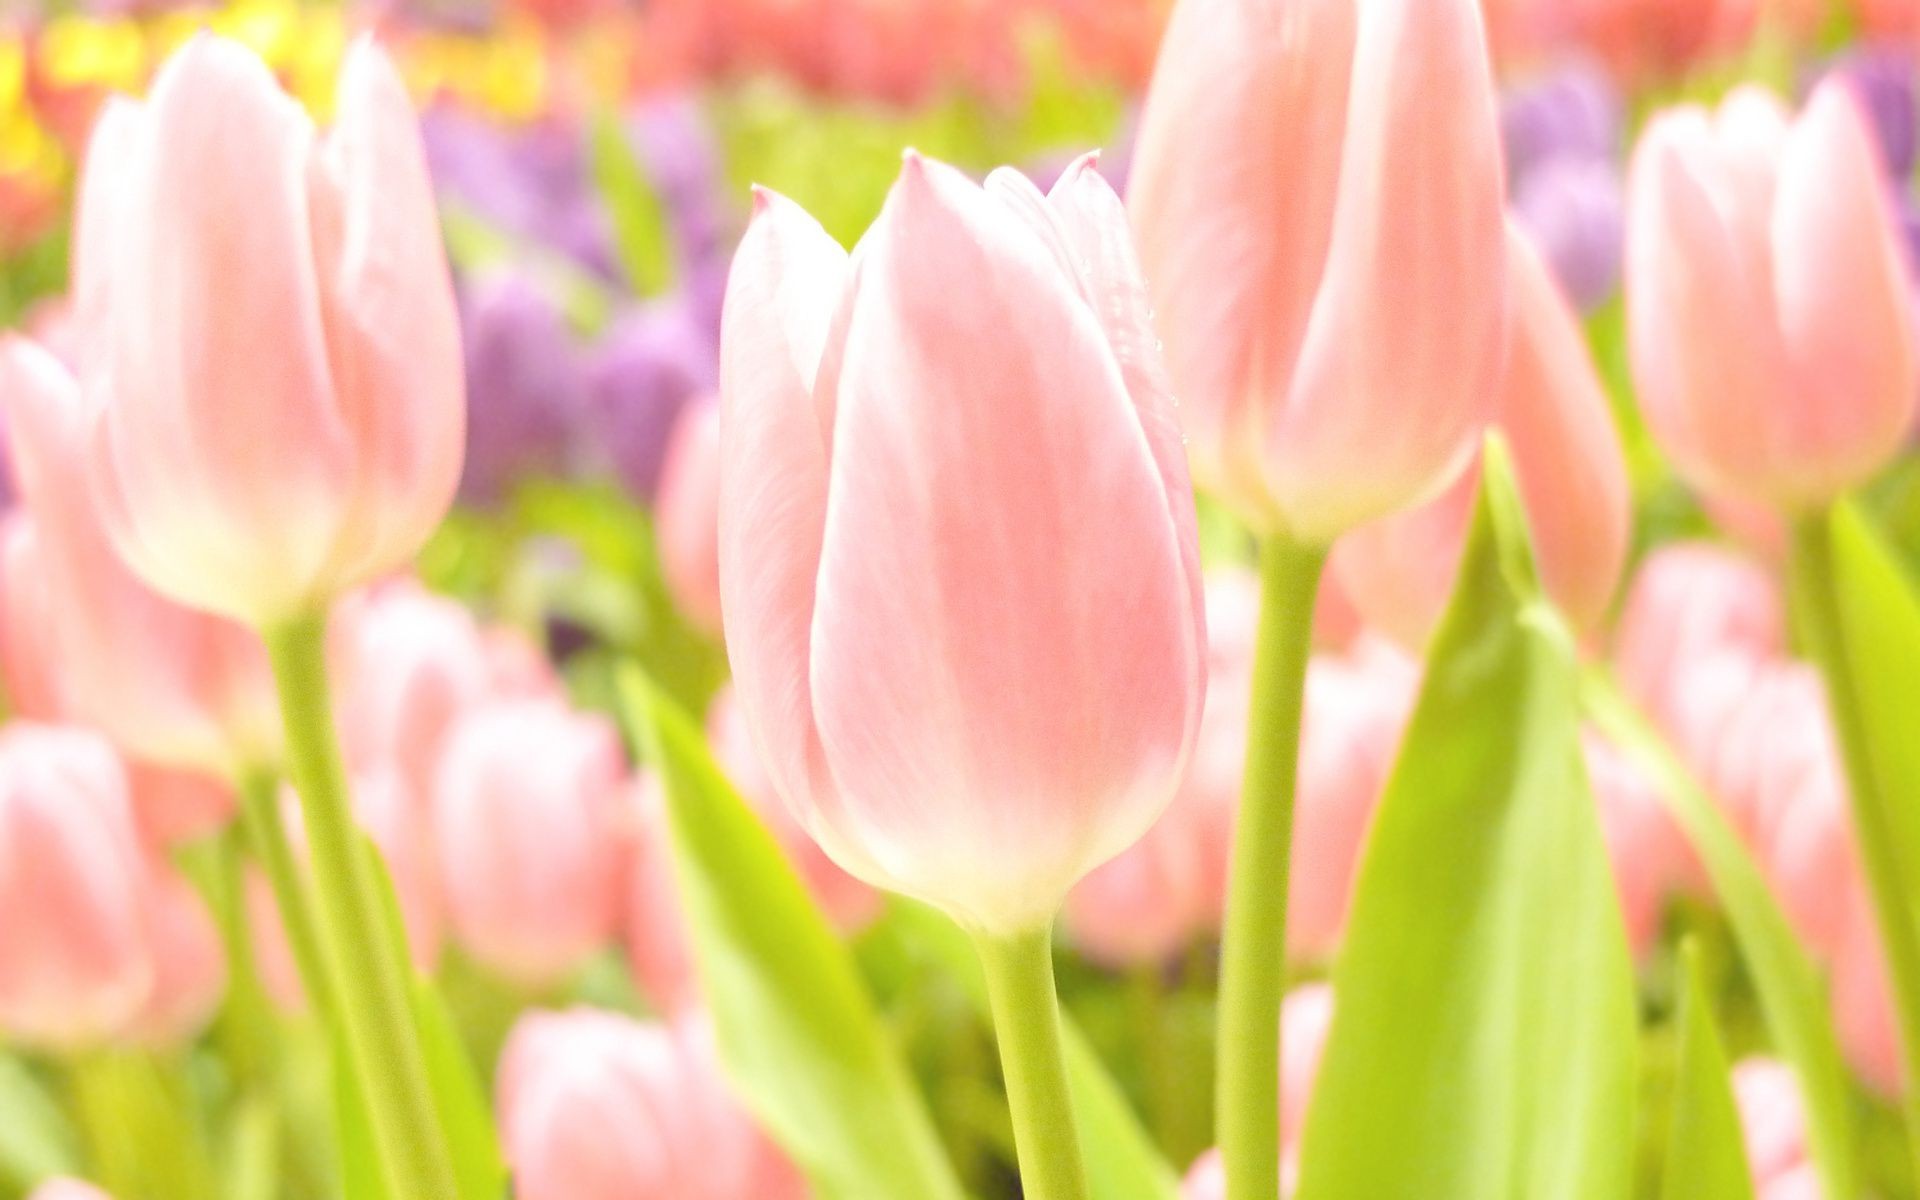 тюльпаны природа тюльпан цветок флора пасха яркий лето сад лист цветочные букет цвет рост лепесток сезон блюминг хорошую погоду любовь весна